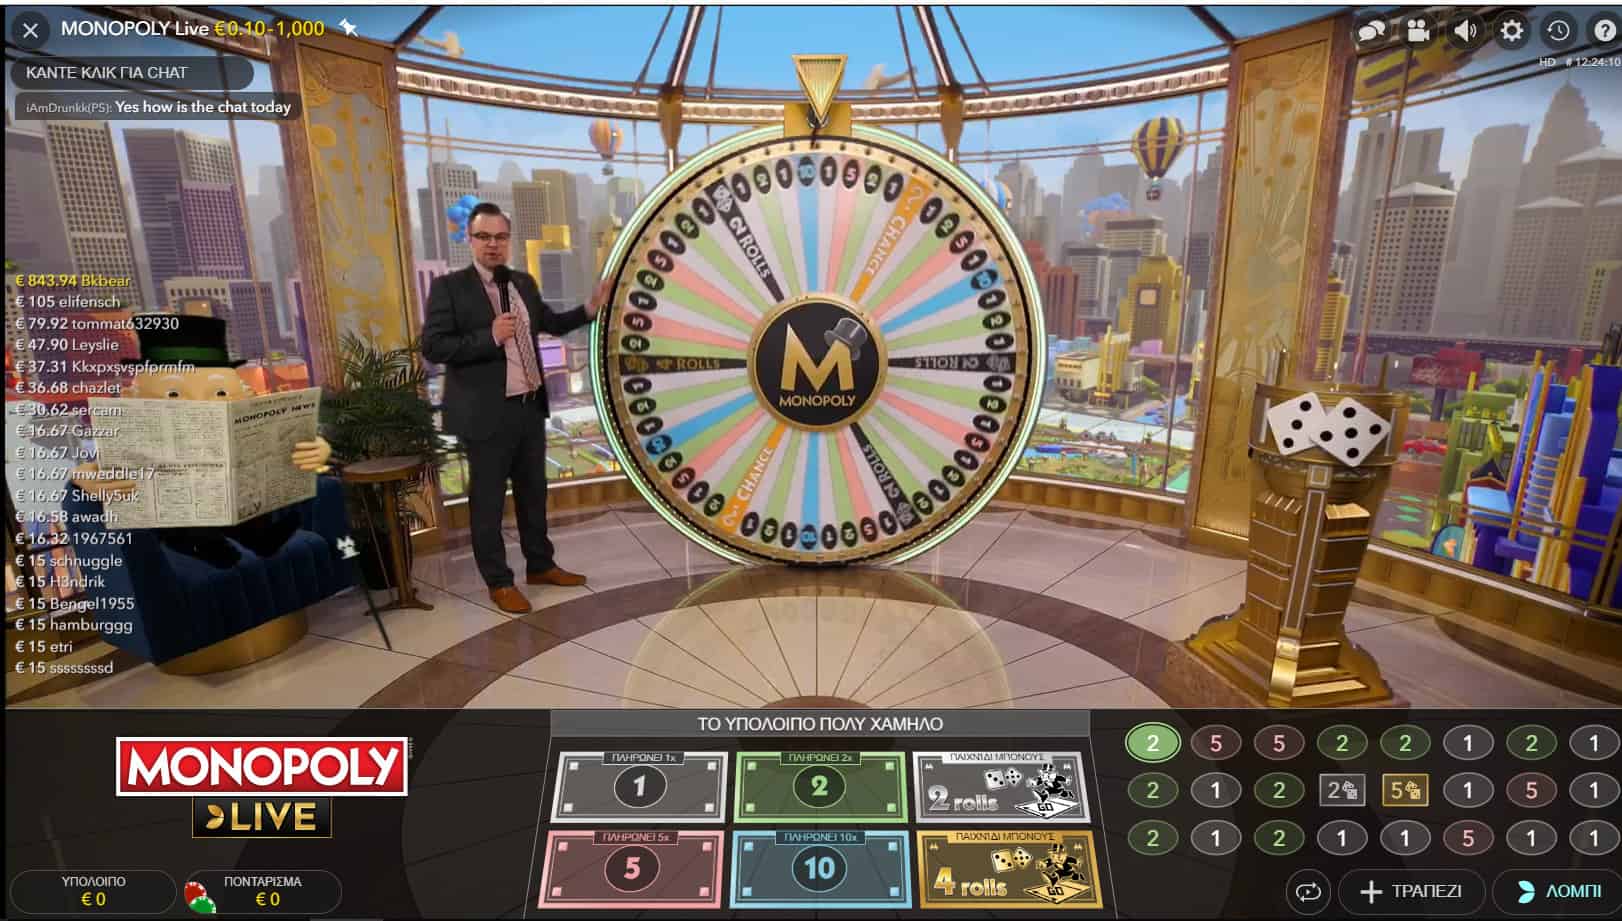 Νόμιμα καζίνο με Live Monopoly Evolution Gaming